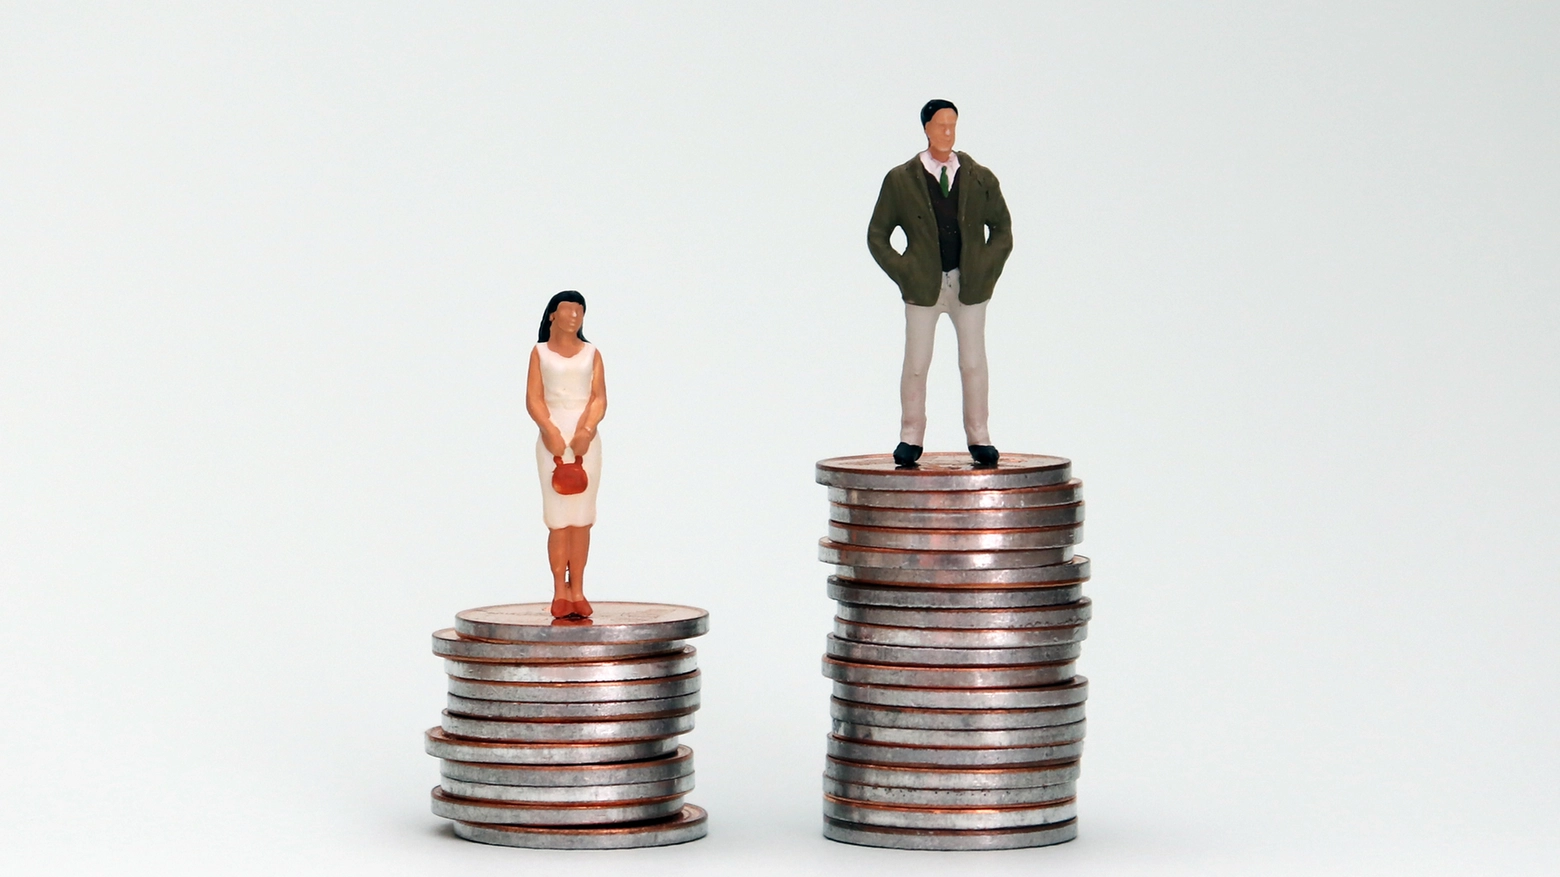 Quasi 8mila euro di differenza la differenza salariale tra uomini e donne nel settore privato